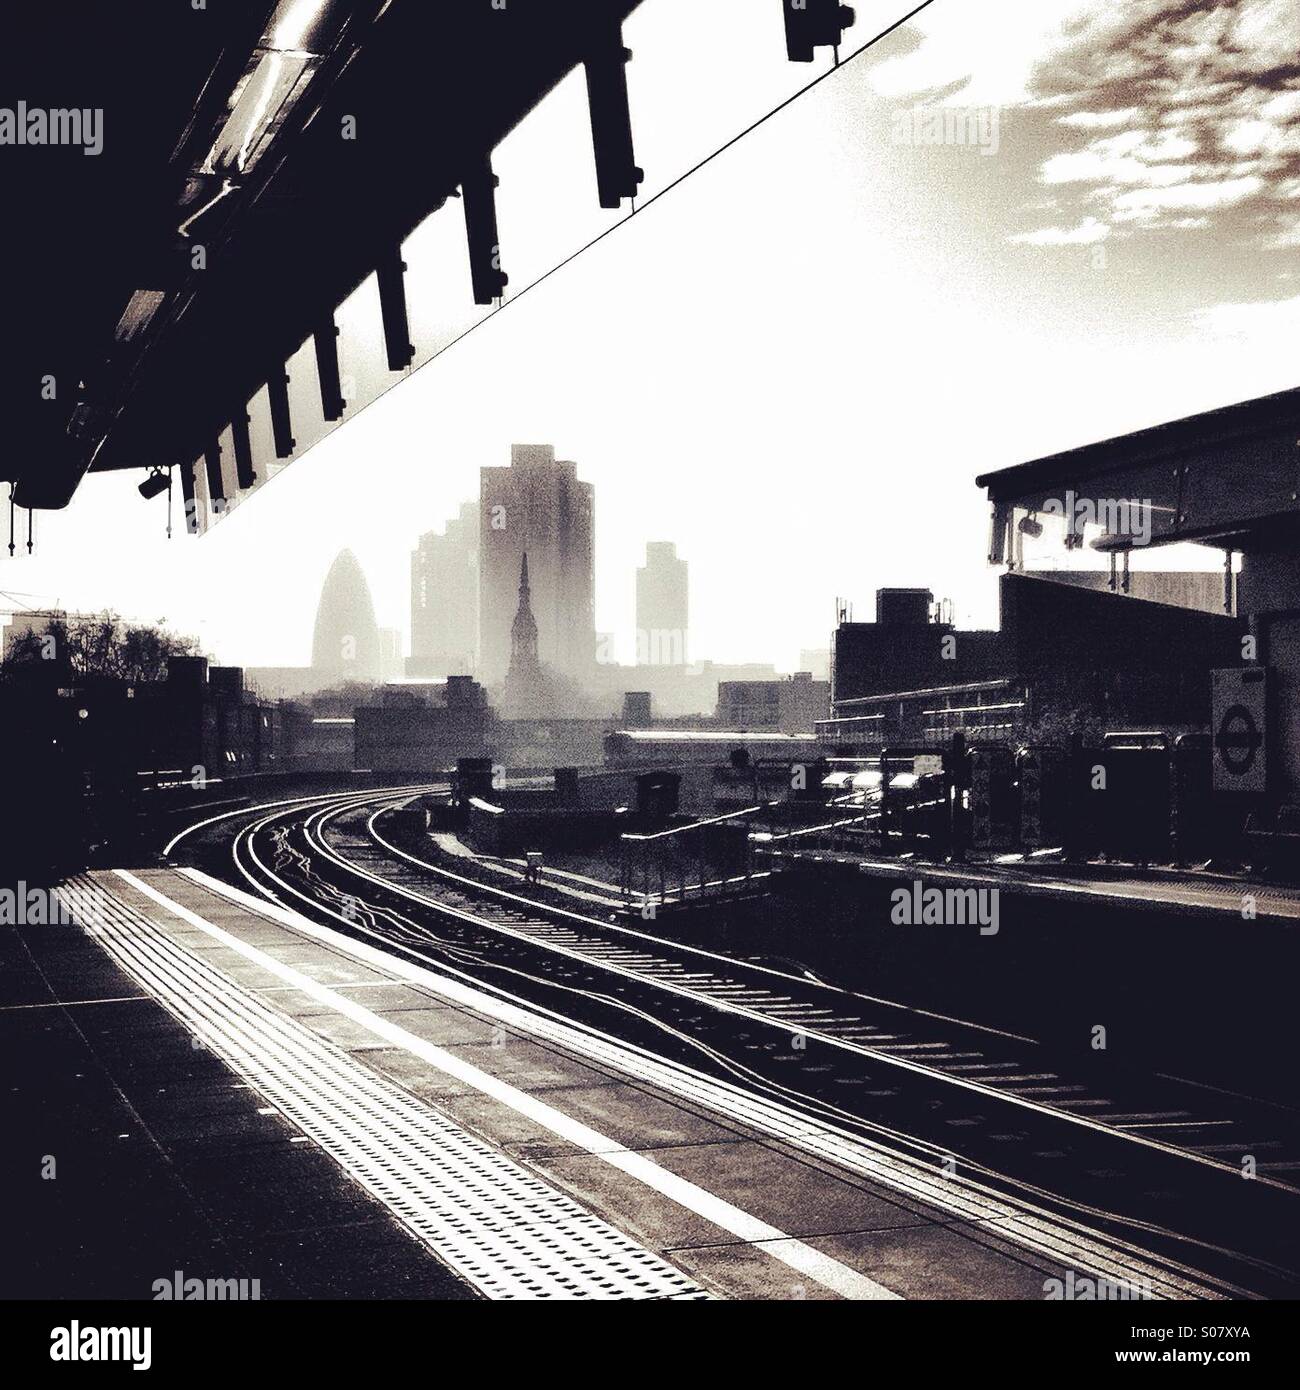 Grattacieli nella città di Londra si vede nella distanza, dal punto di vista della piattaforma a Hoxton overground stazione su una leggermente torbida giorno, in bianco e nero Foto Stock